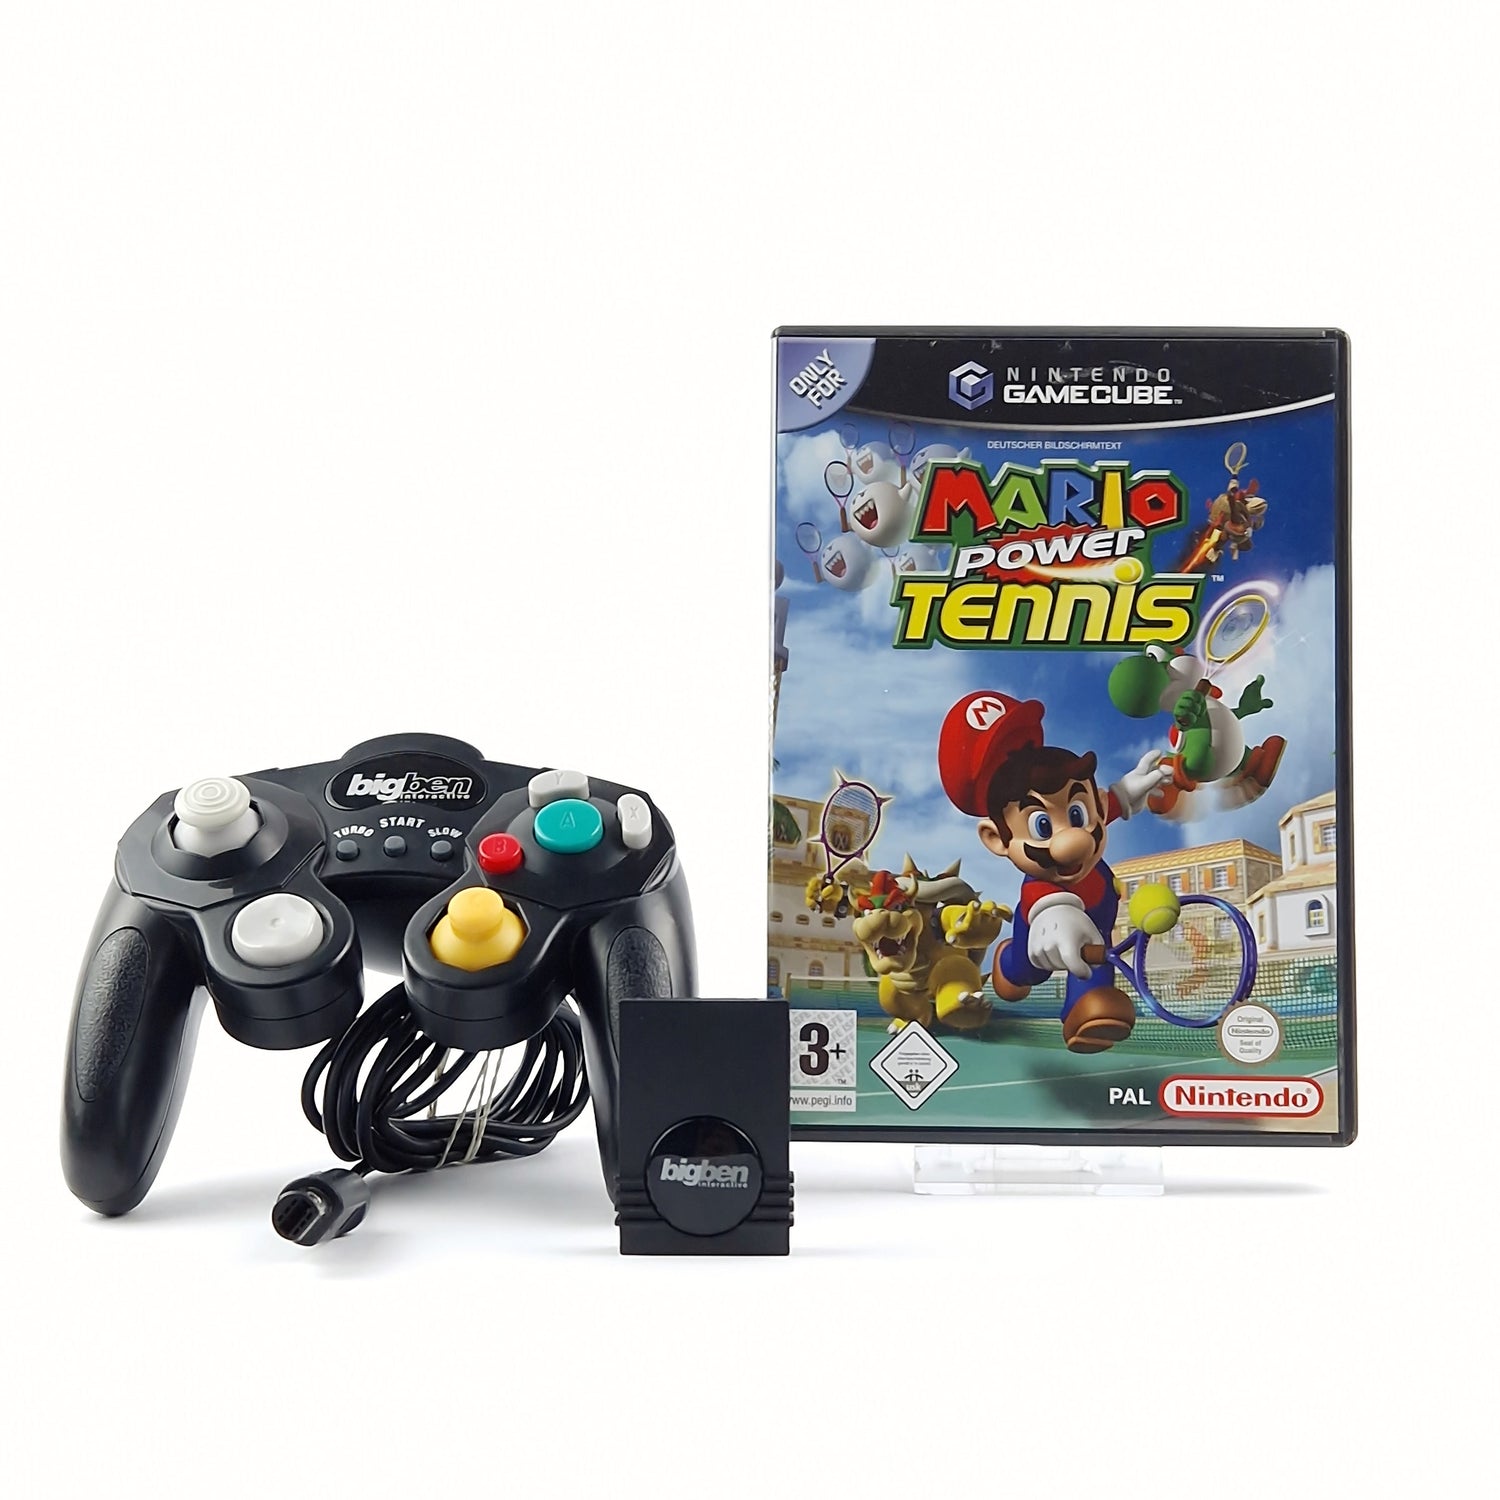 Nintendo Gamecube game: Mario Power Tennis + Big Ben controller and memory card